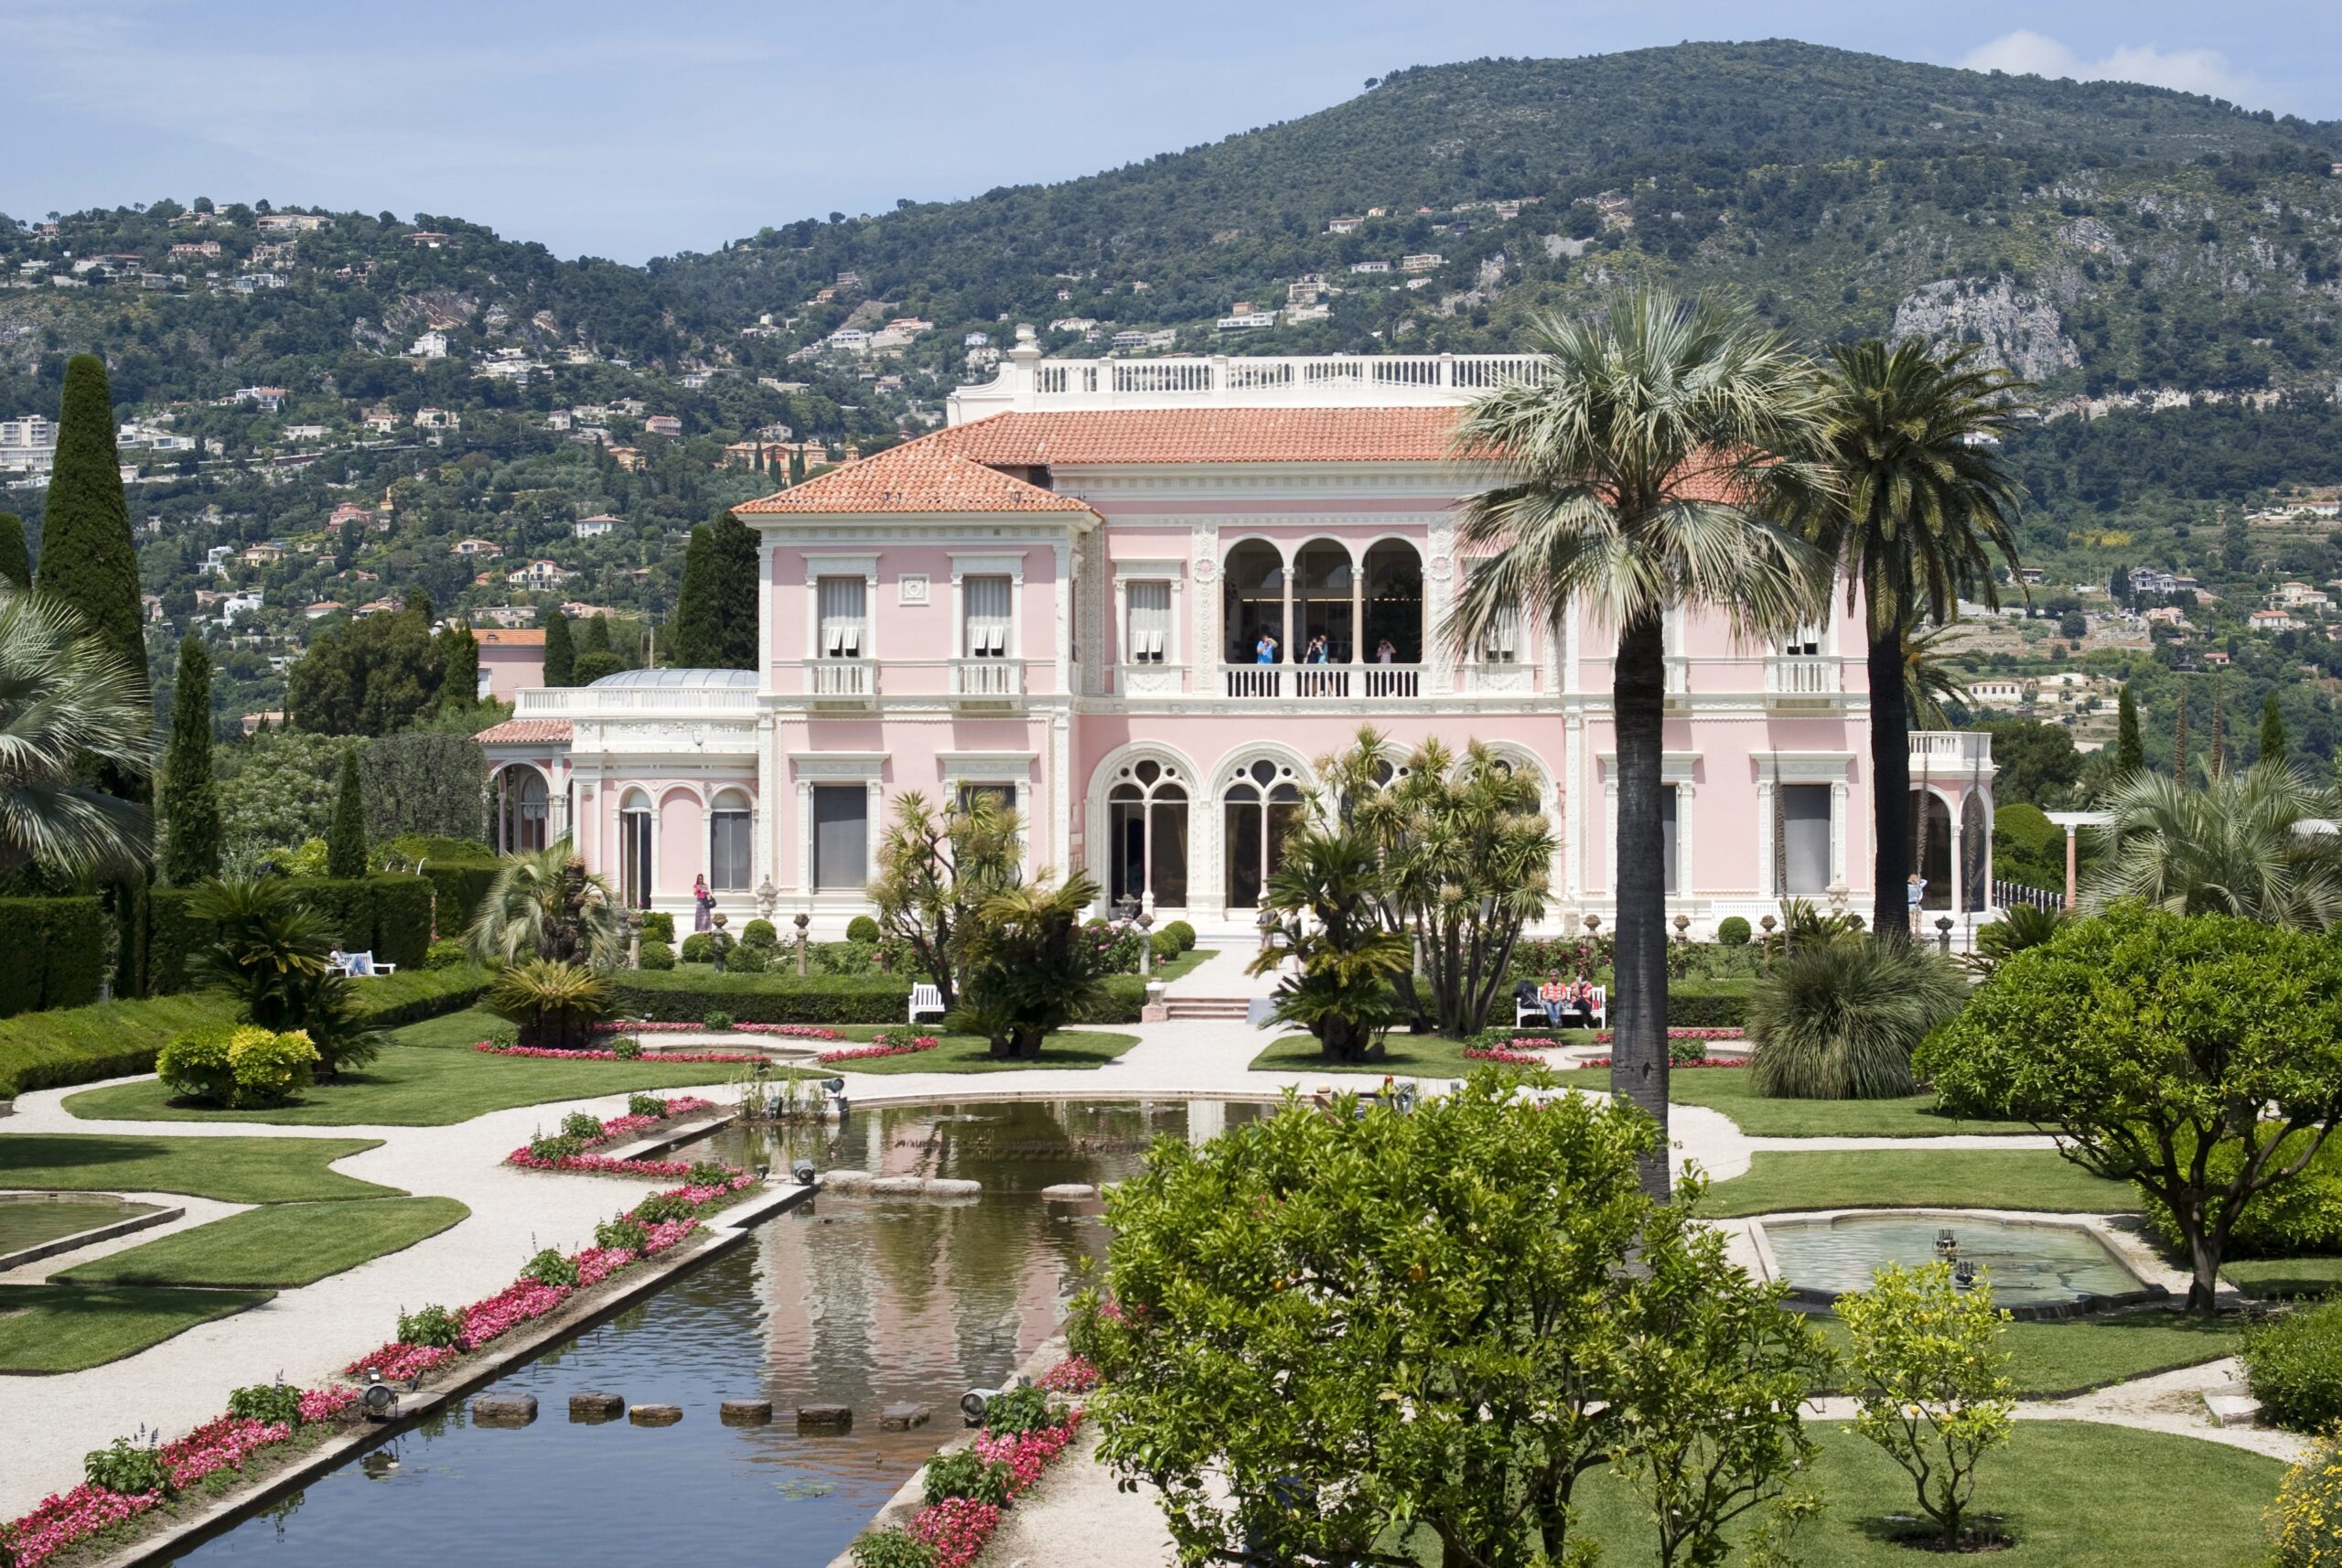 Villa Ephrussi de Rothschild Gardens